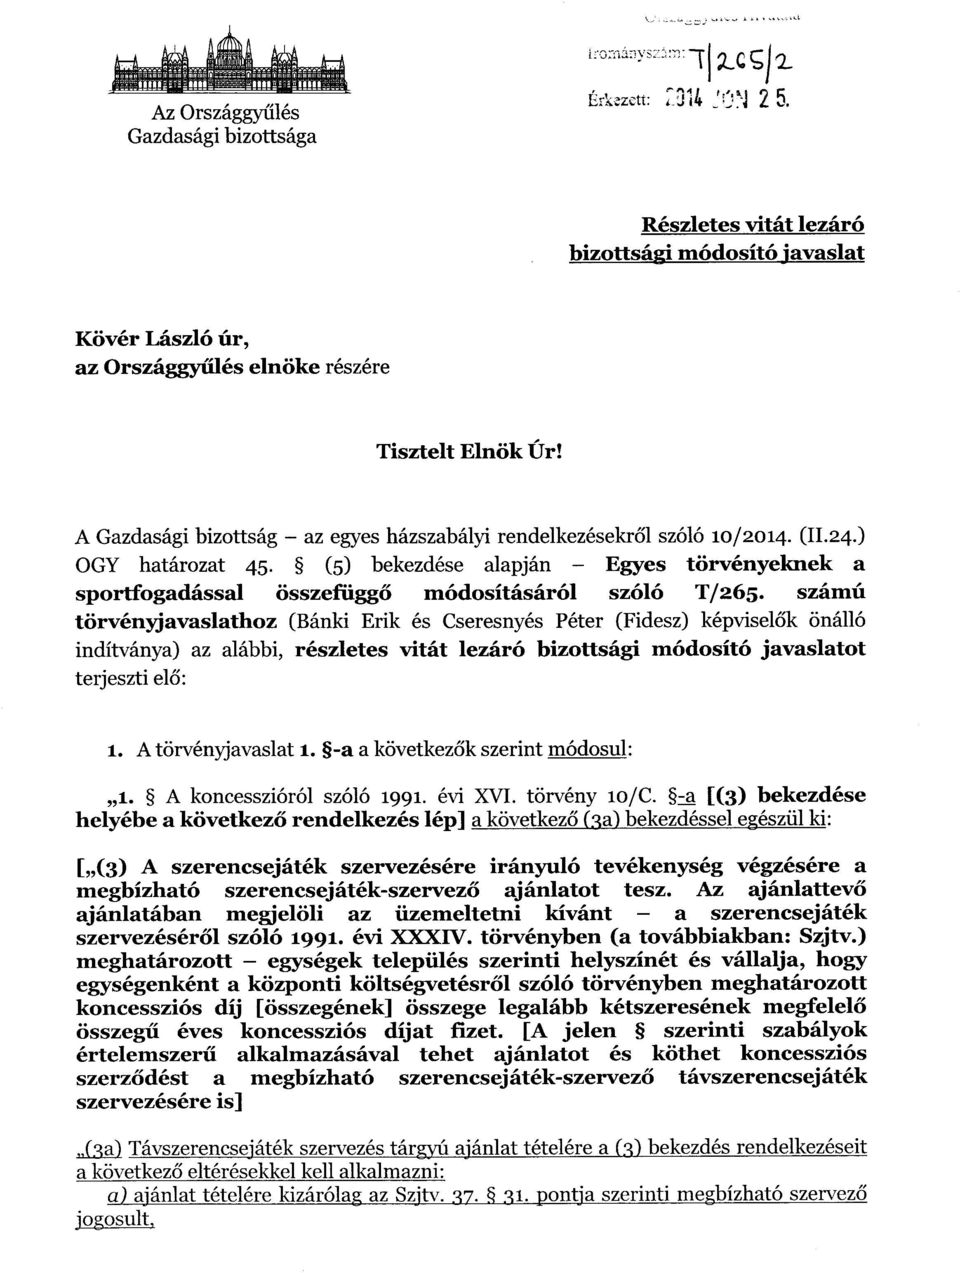 számú törvényjavaslathoz (Bánki Erik és Cseresnyés Péter (Fidesz) képvisel ők önálló indítványa) az alábbi, részletes vitát lezáró bizottsági módosító javaslatot terjeszti el ő : 1.